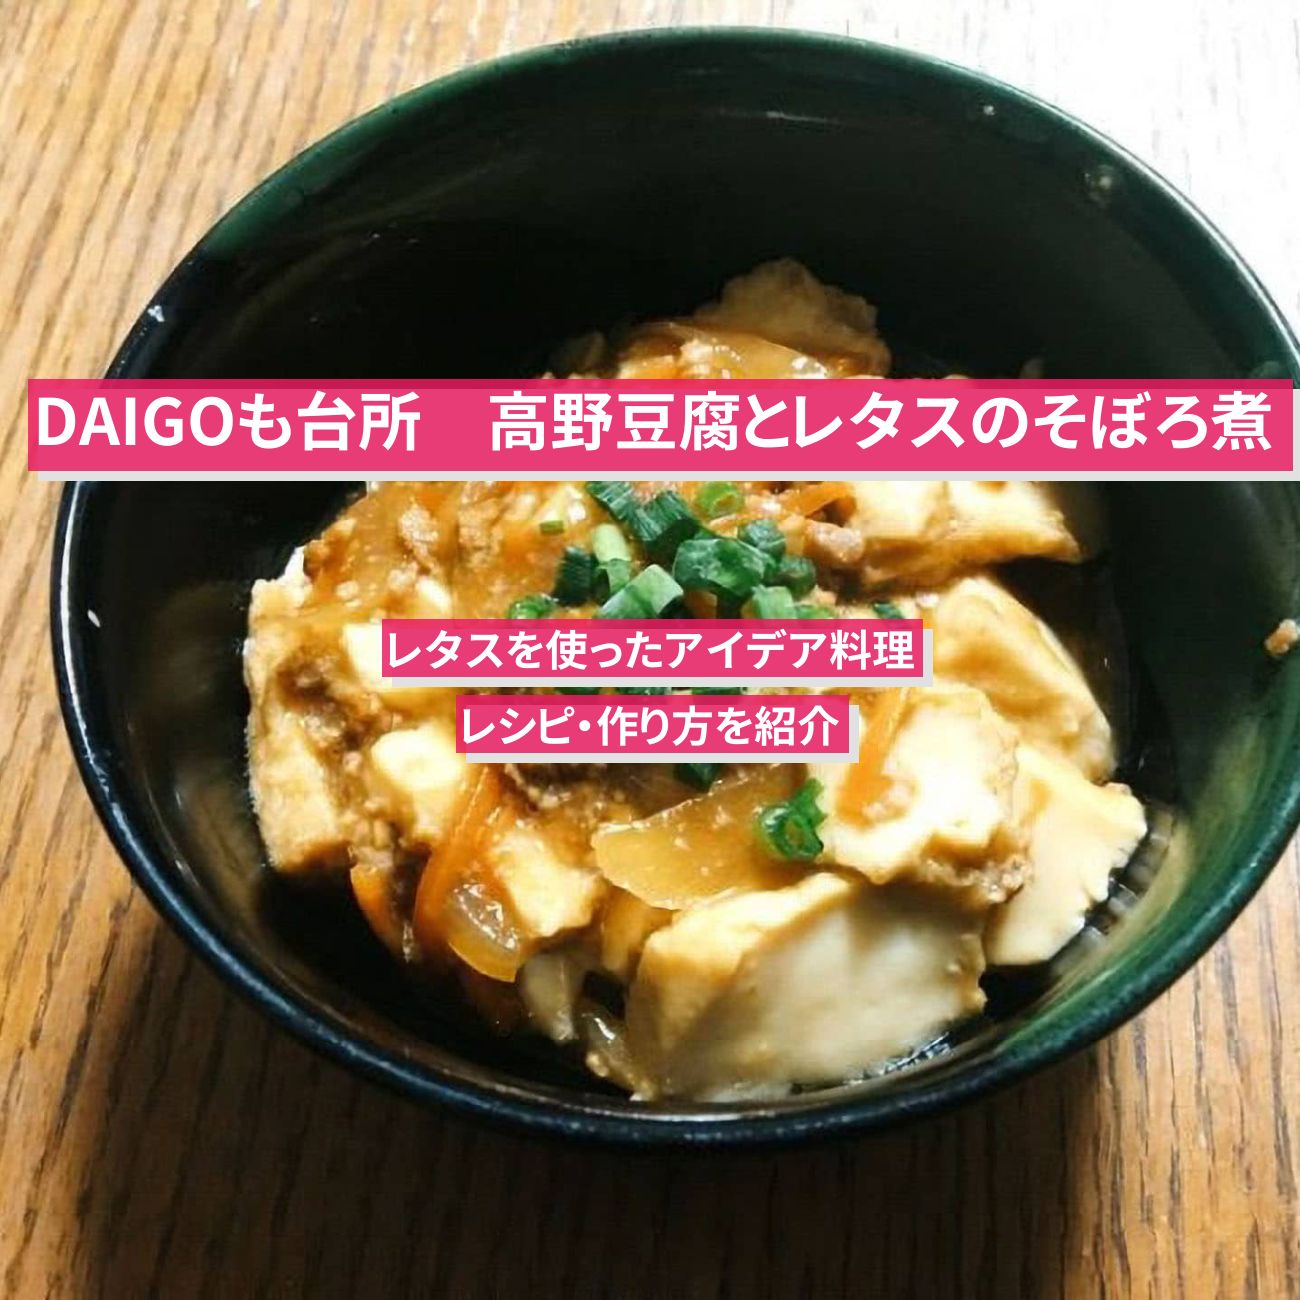 【DAIGOも台所】『高野豆腐とレタスのそぼろ煮』のレシピ・作り方を紹介〔ダイゴも台所〕